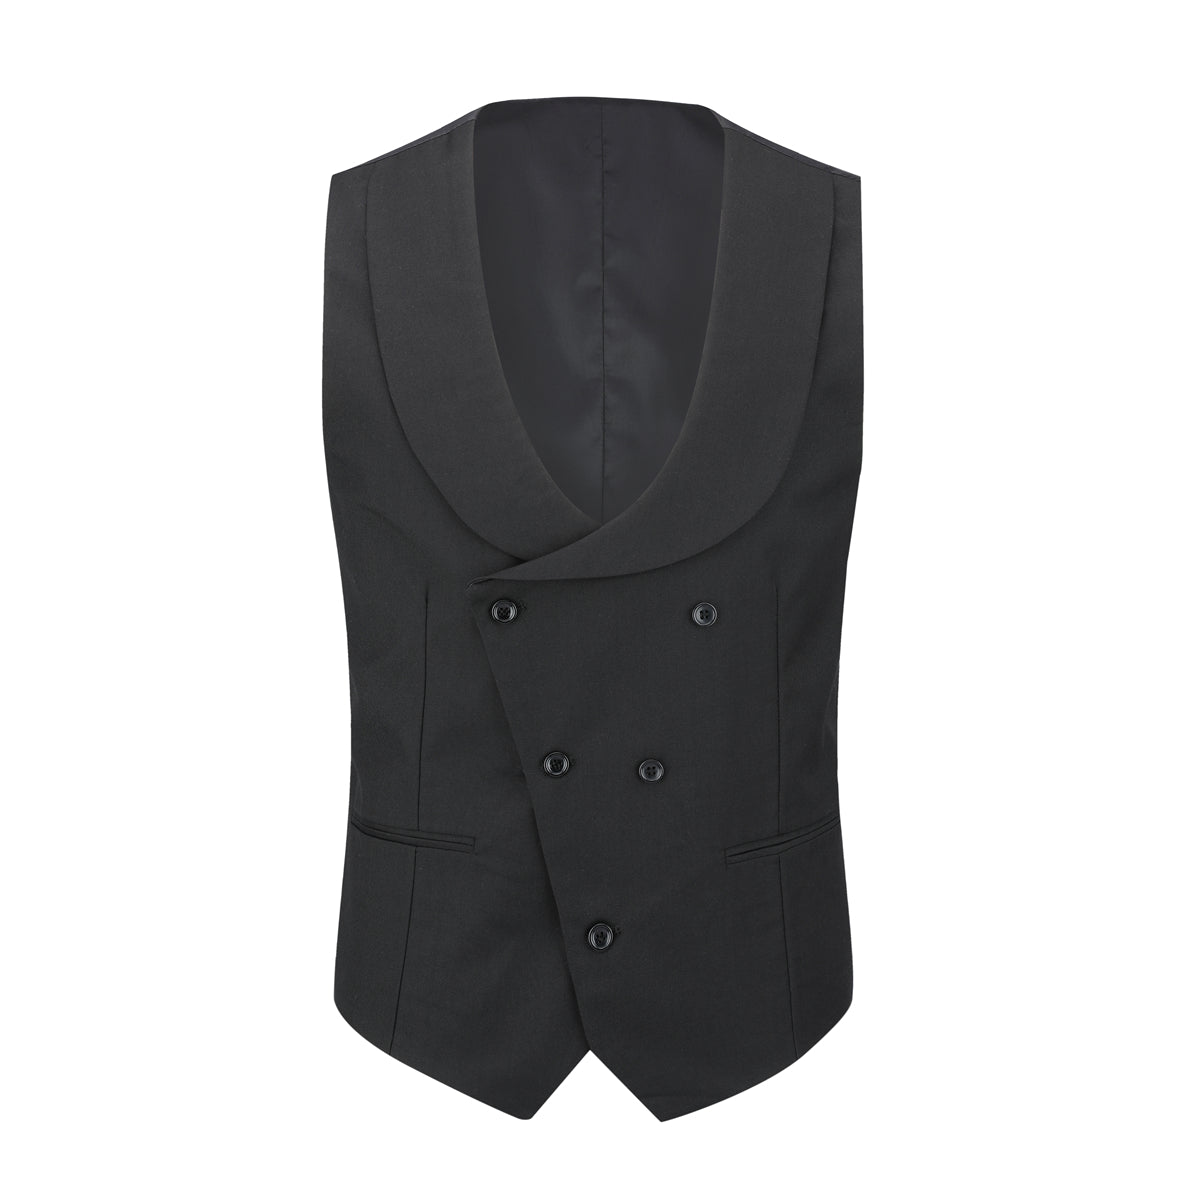 Men's 3-Piece Fashion One Button Color-Blocking Suit Black